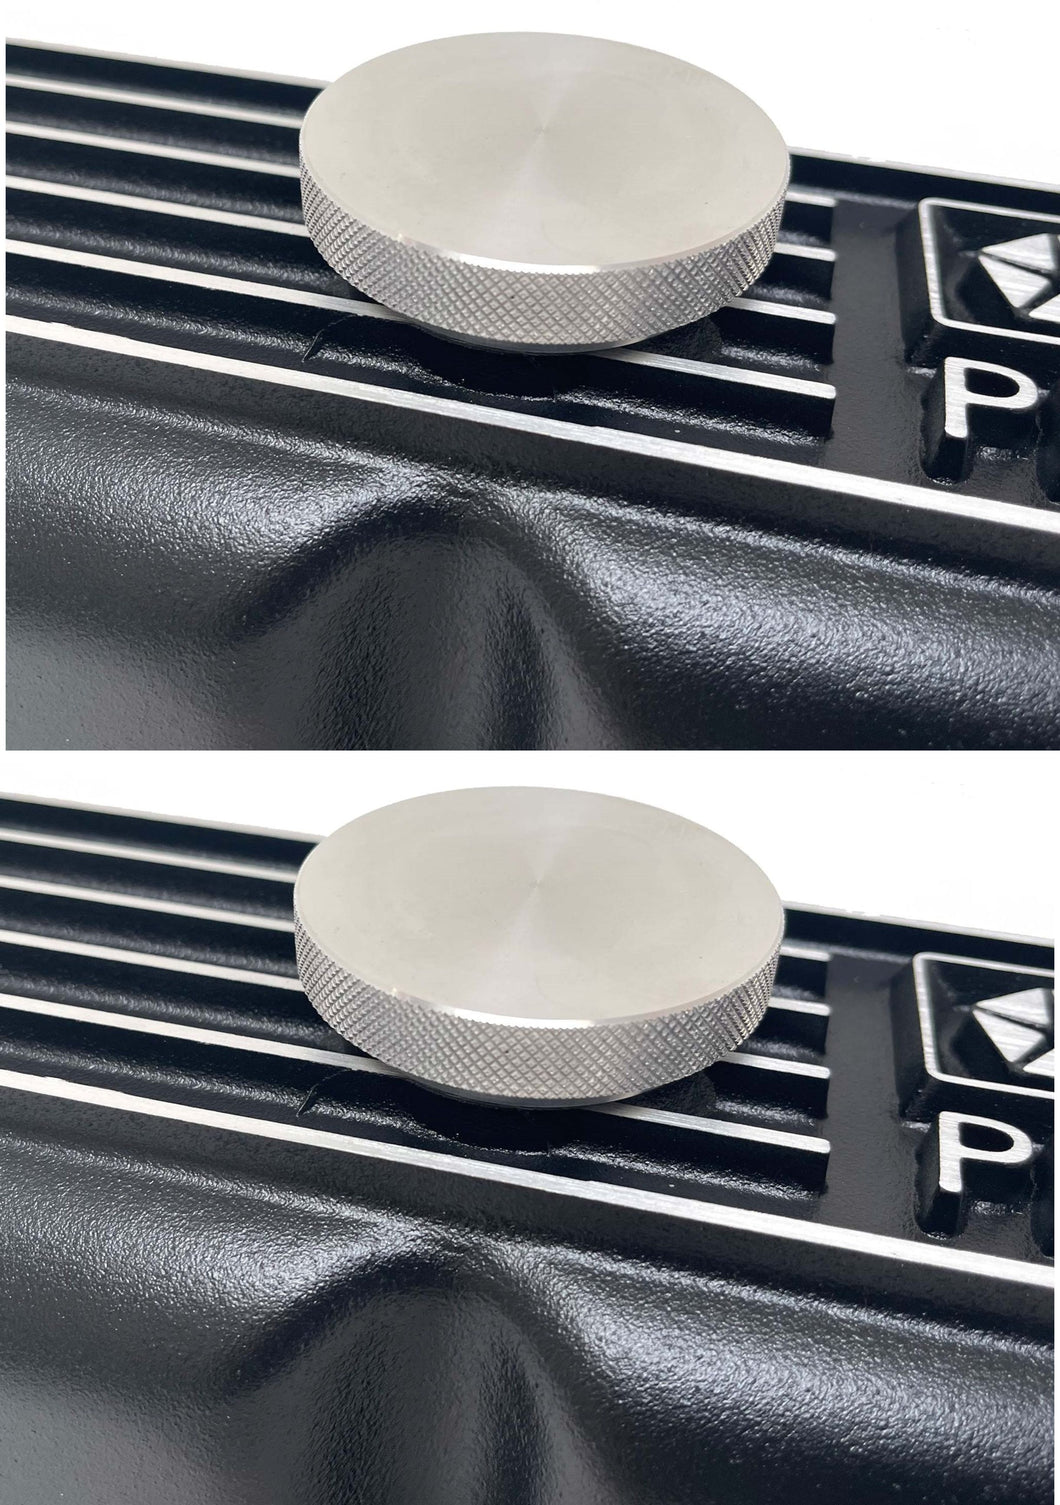 Mopar Twist In Oil Caps - Pair - Billet Aluminum